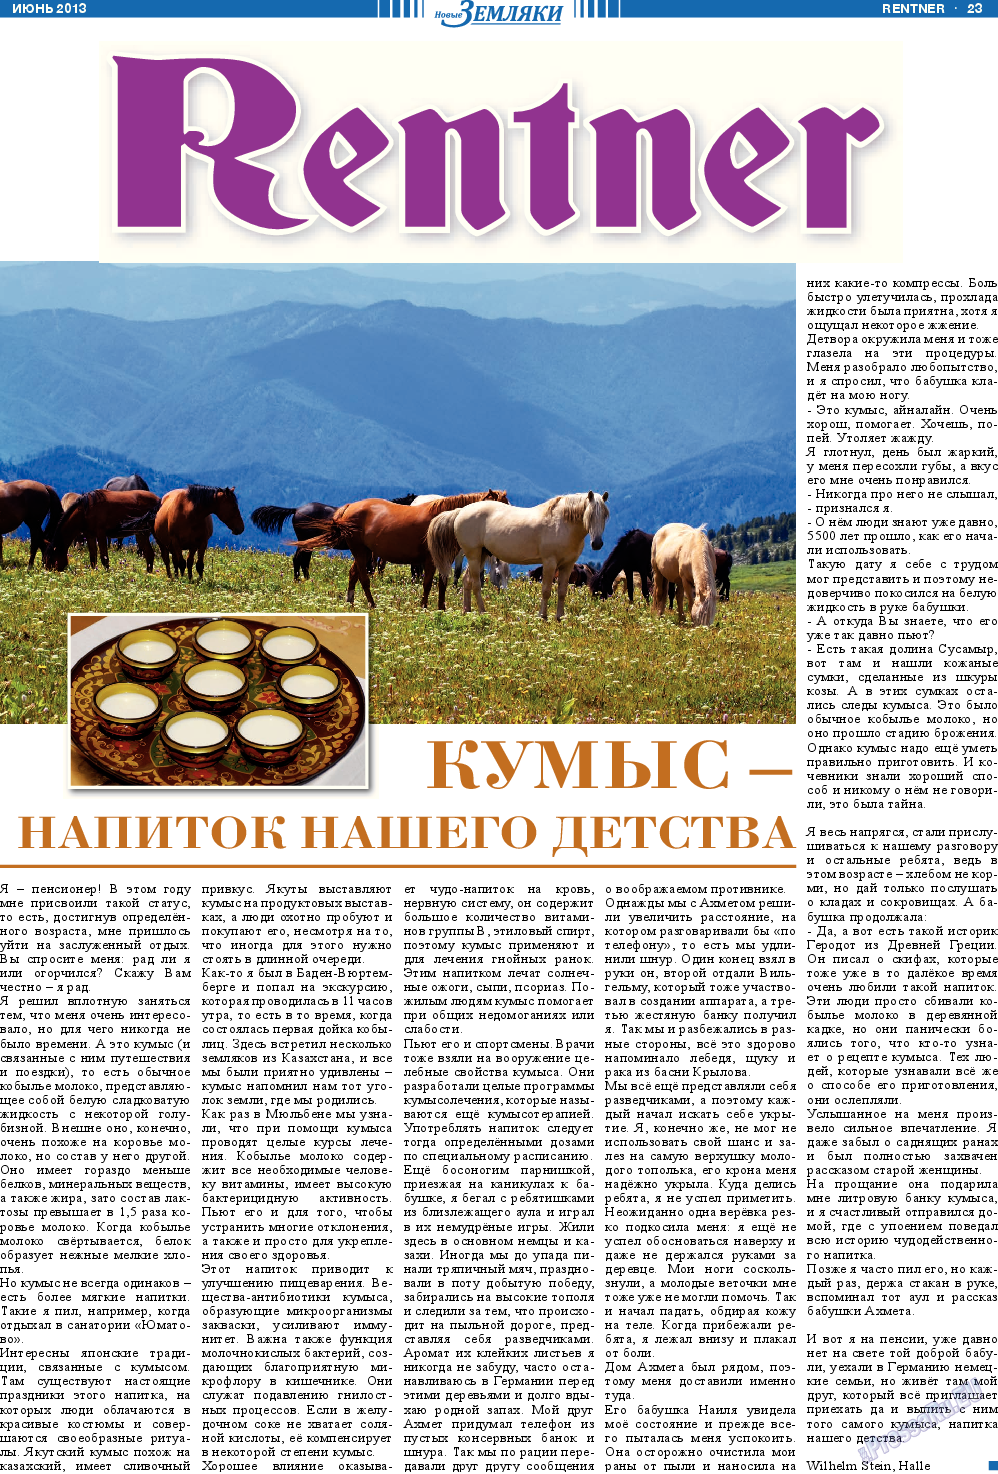 Новые Земляки, газета. 2013 №6 стр.23